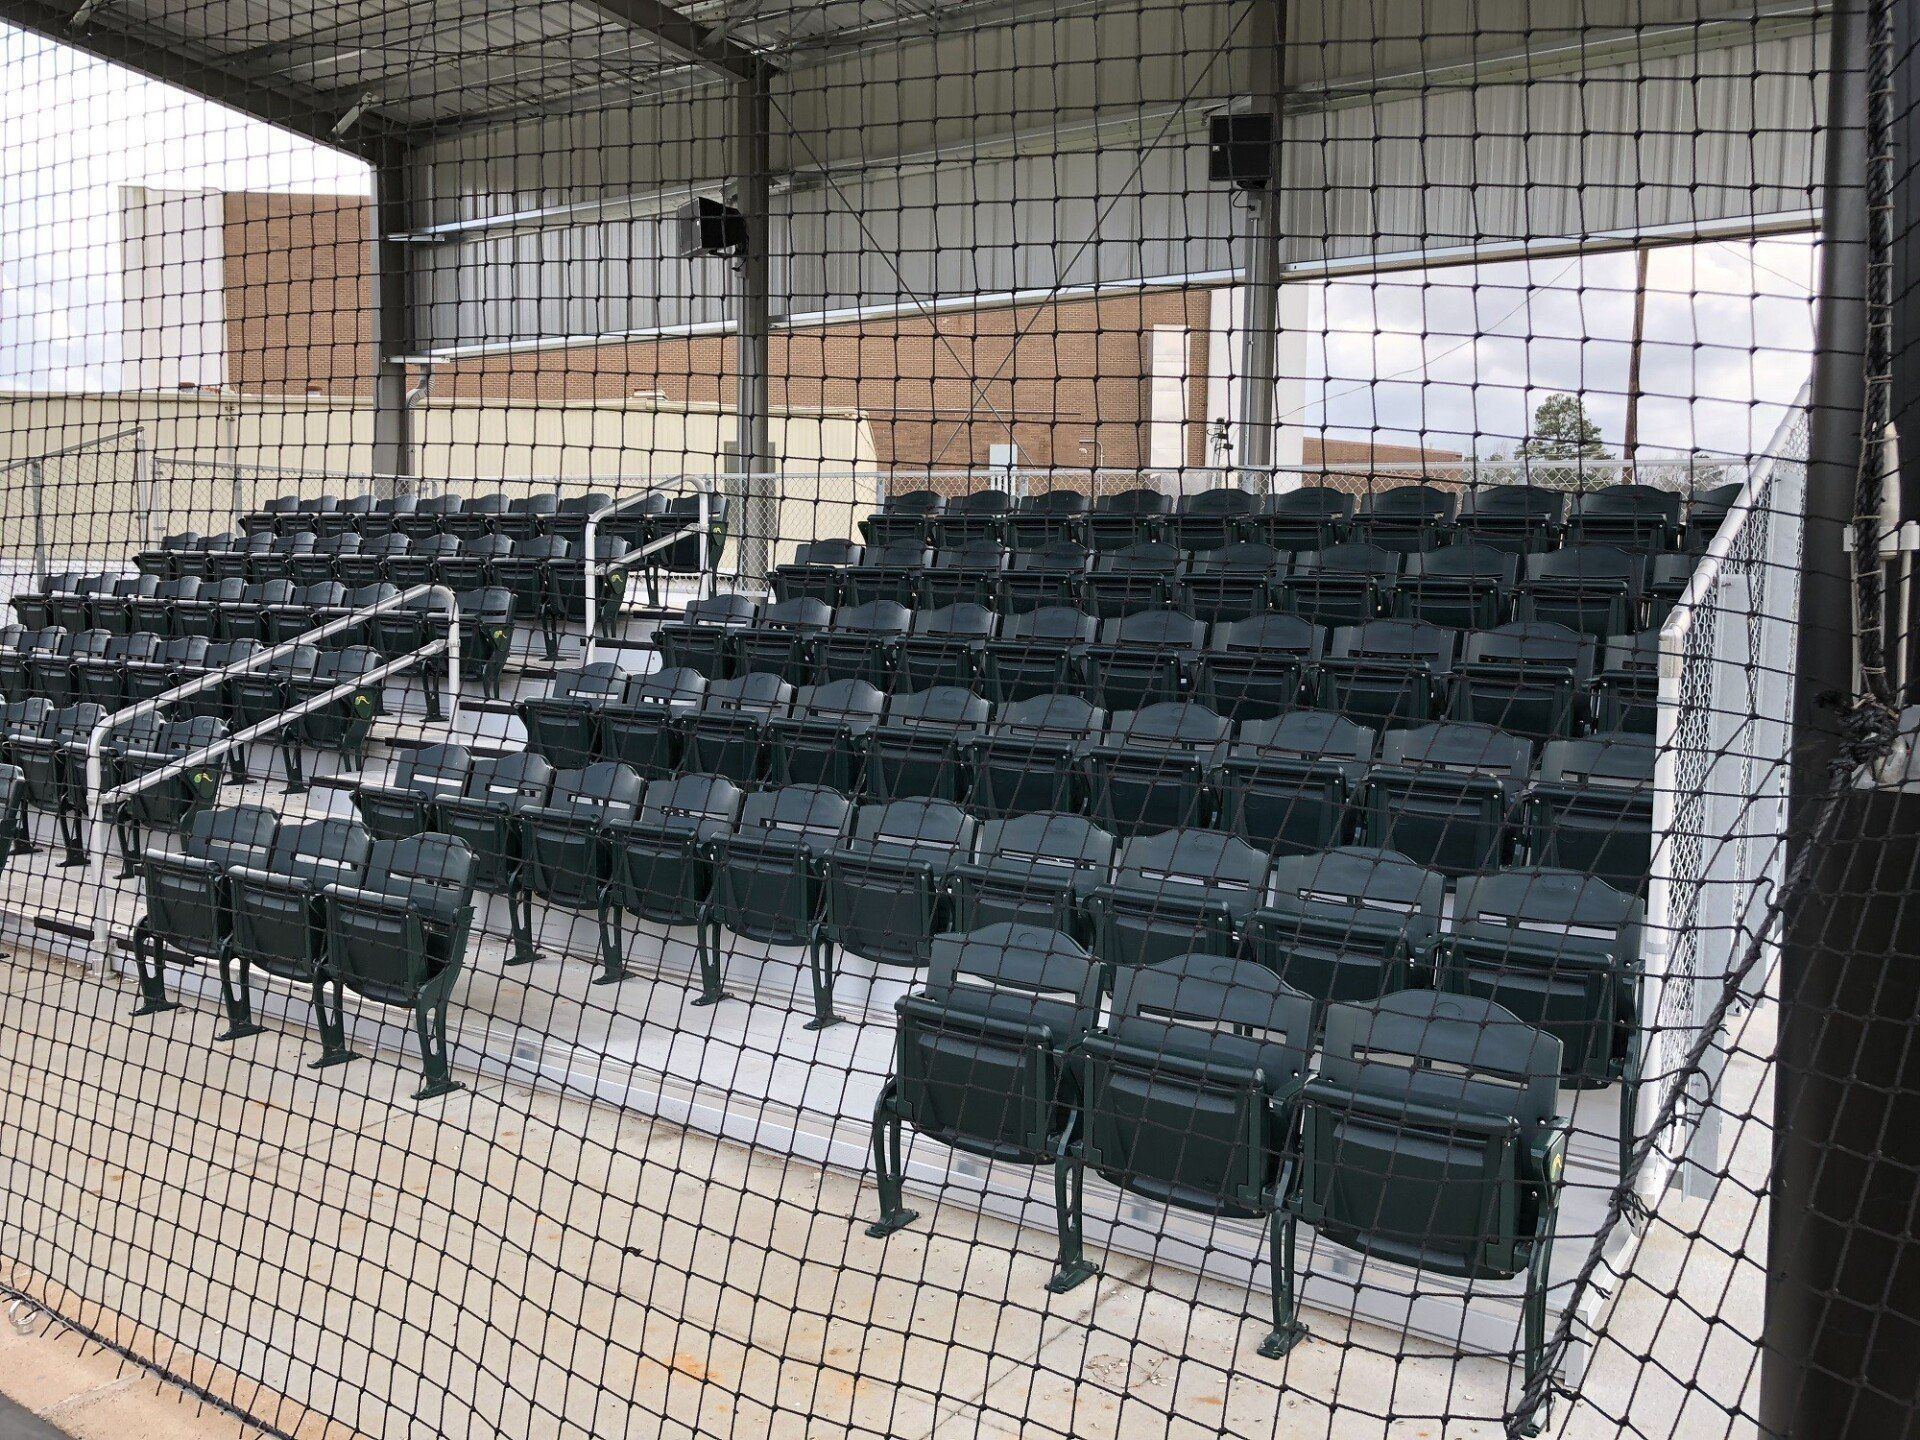 image of baseball seating